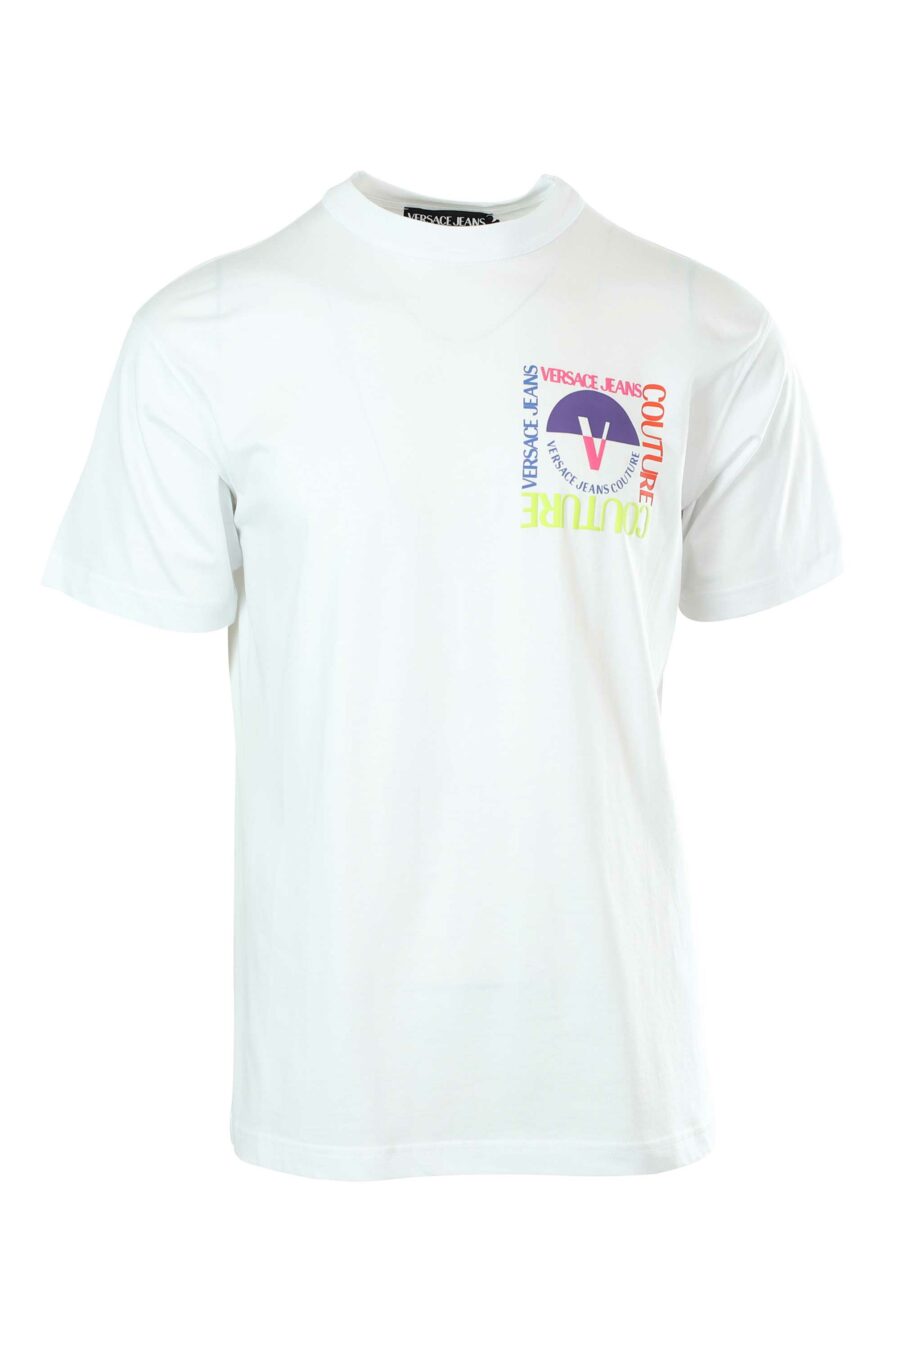 T-shirt branca com minilogo multicolorido - 8052019235029